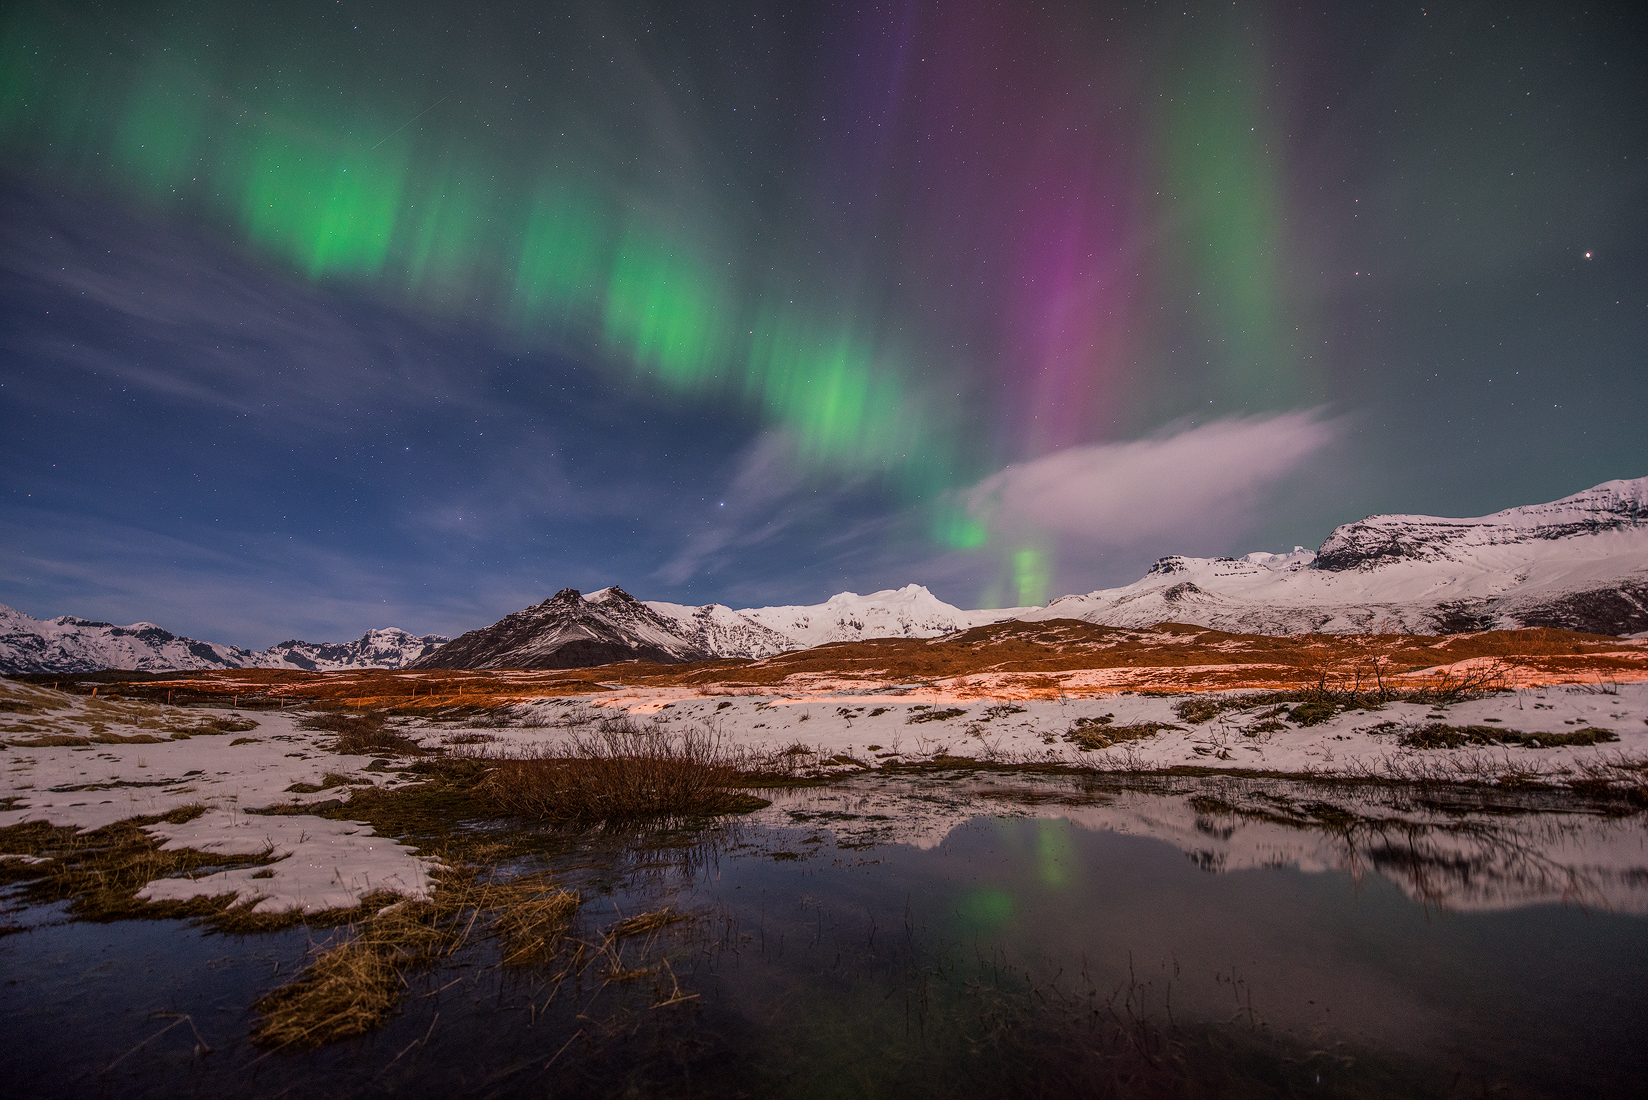 Los paisajes nevados de Islandia en invierno brindan un paraíso congelado por encima del cual se puede admirar la aurora boreal.